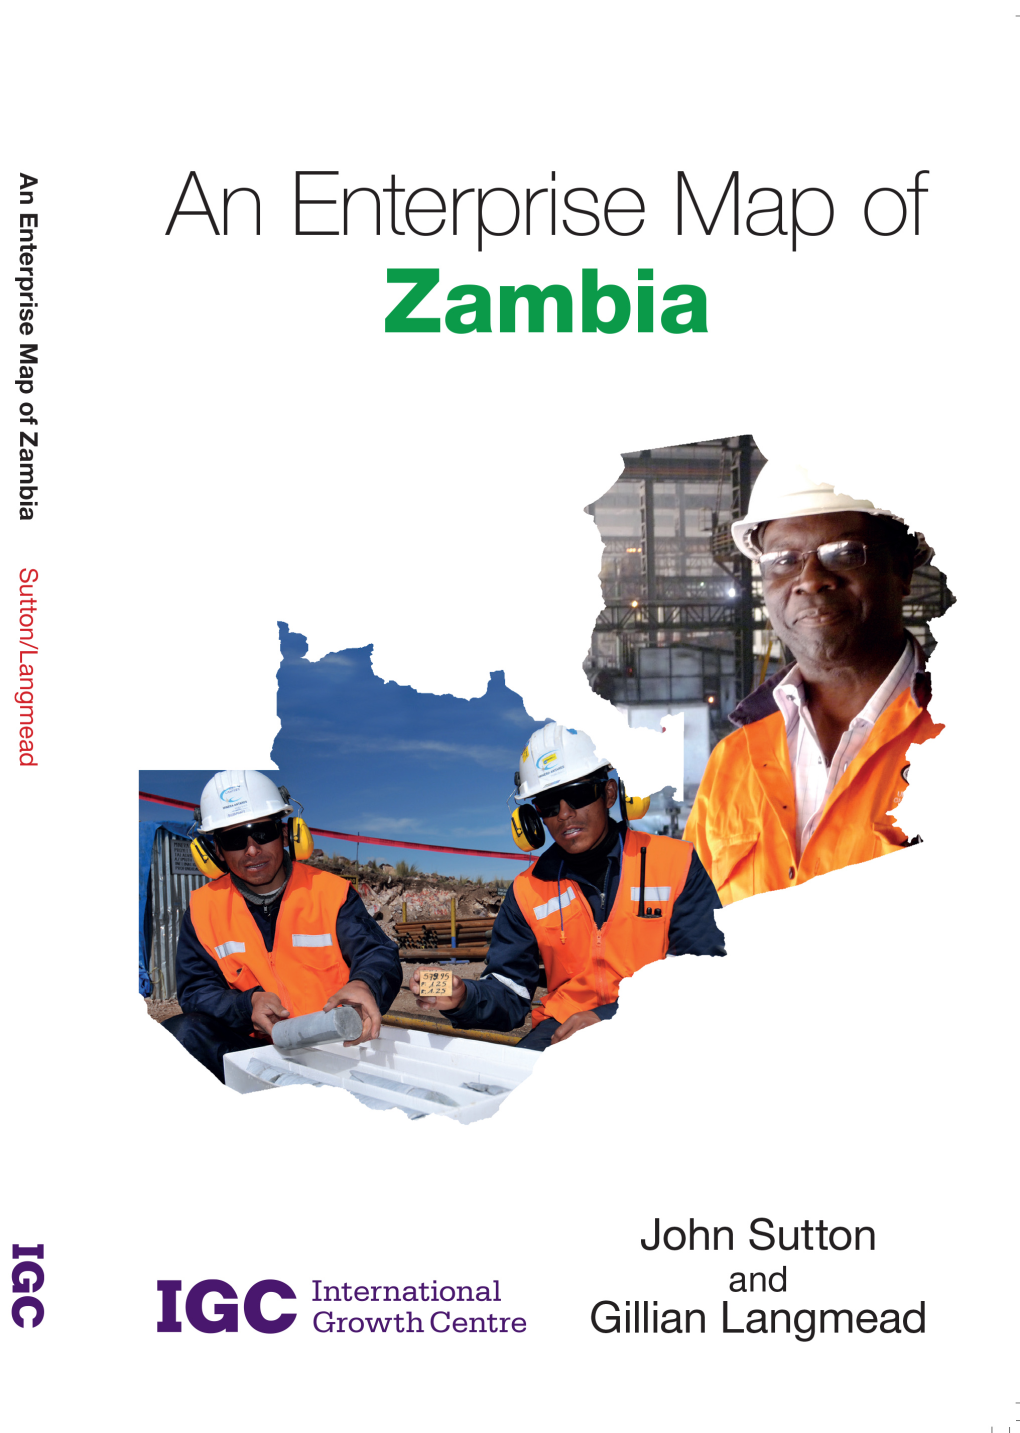 An Enterprise Map of Zambia